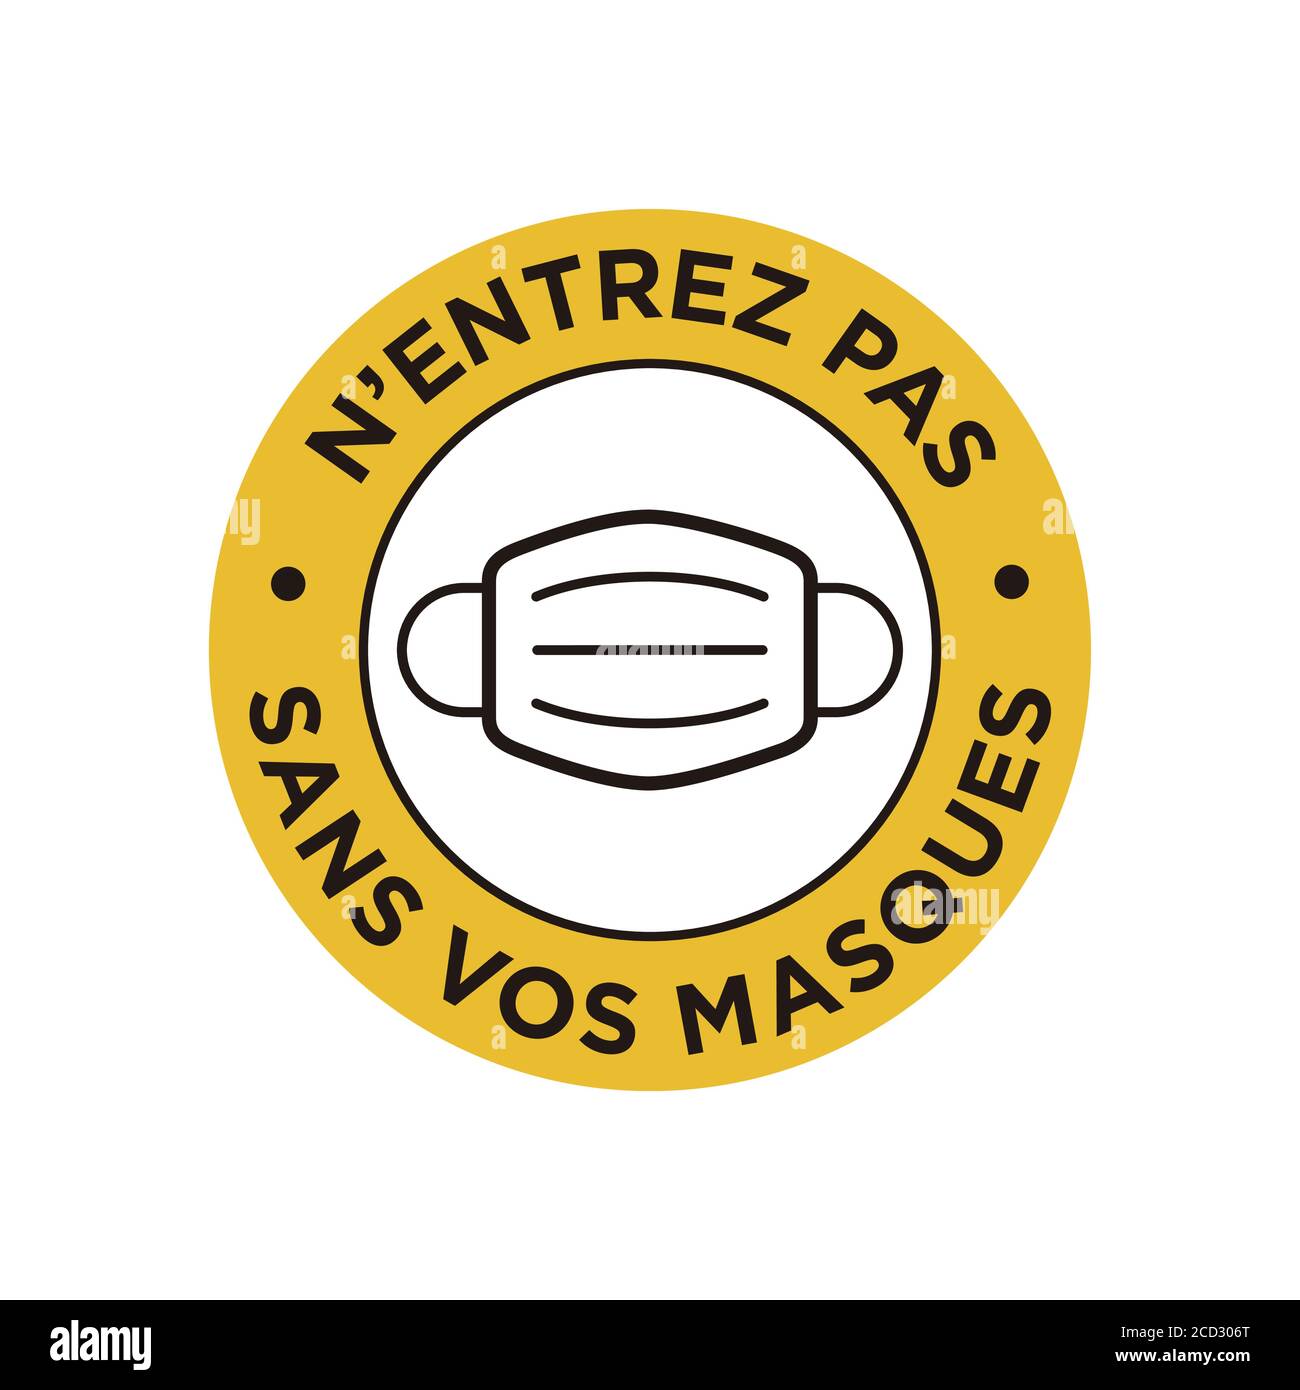 Nessuna voce senza maschera scritta in francese icona. Simbolo rotondo e giallo sull'uso obbligatorio della maschera facciale per prevenire il Coronavirus. Illustrazione Vettoriale